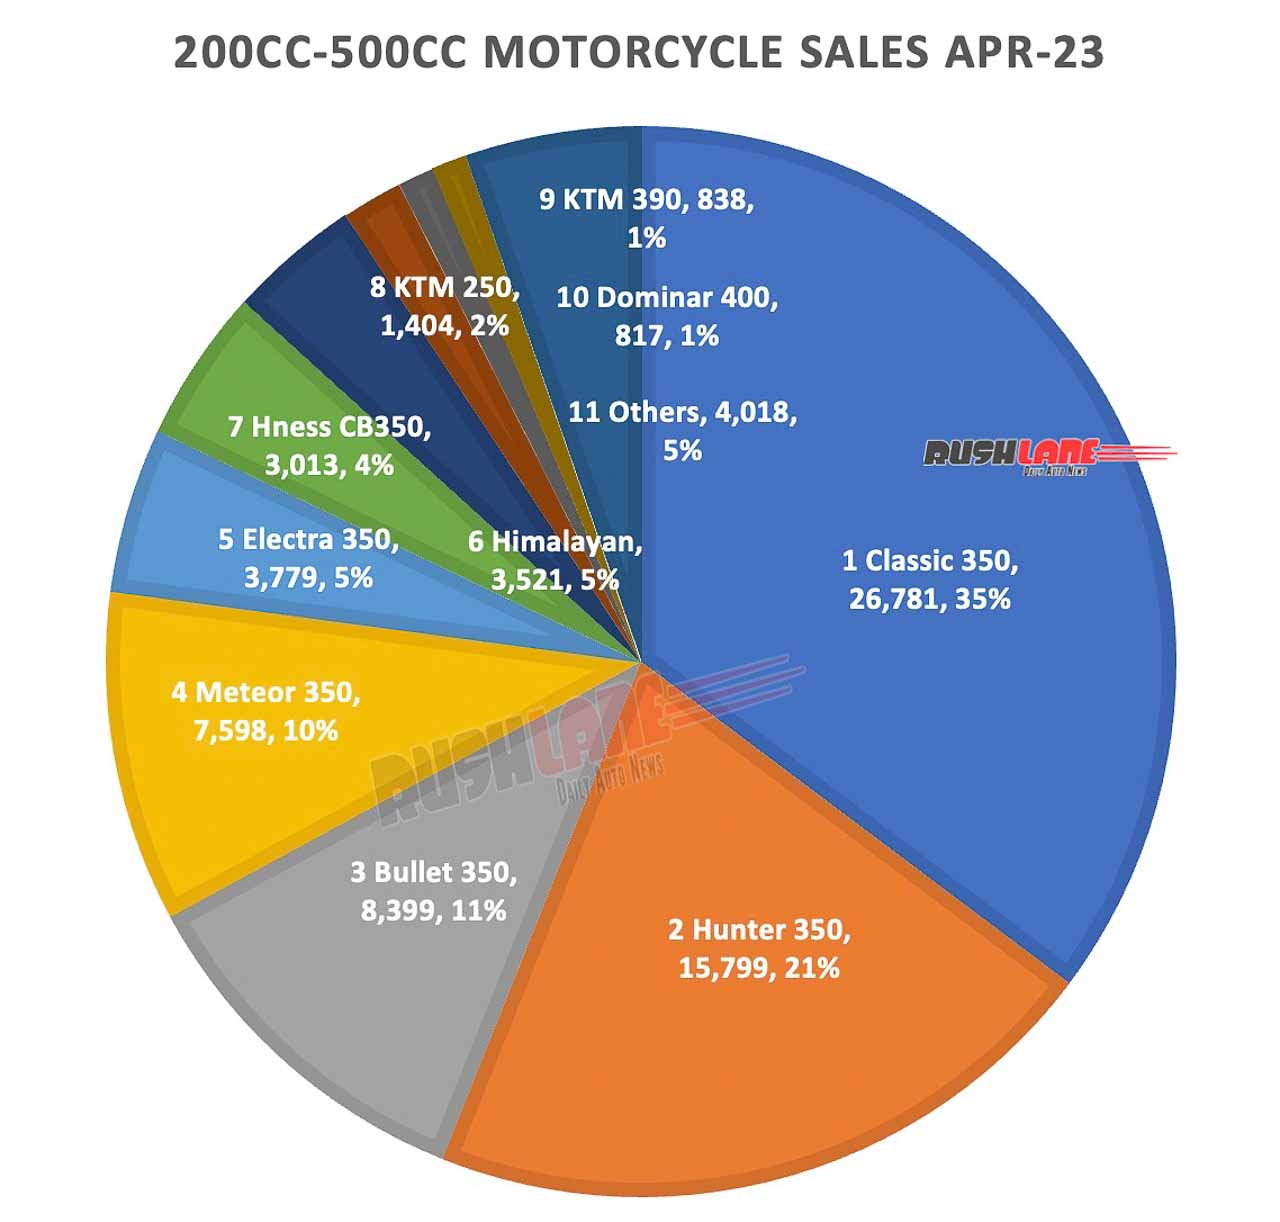 فروش موتور سیکلت 200-500cc آوریل 2023